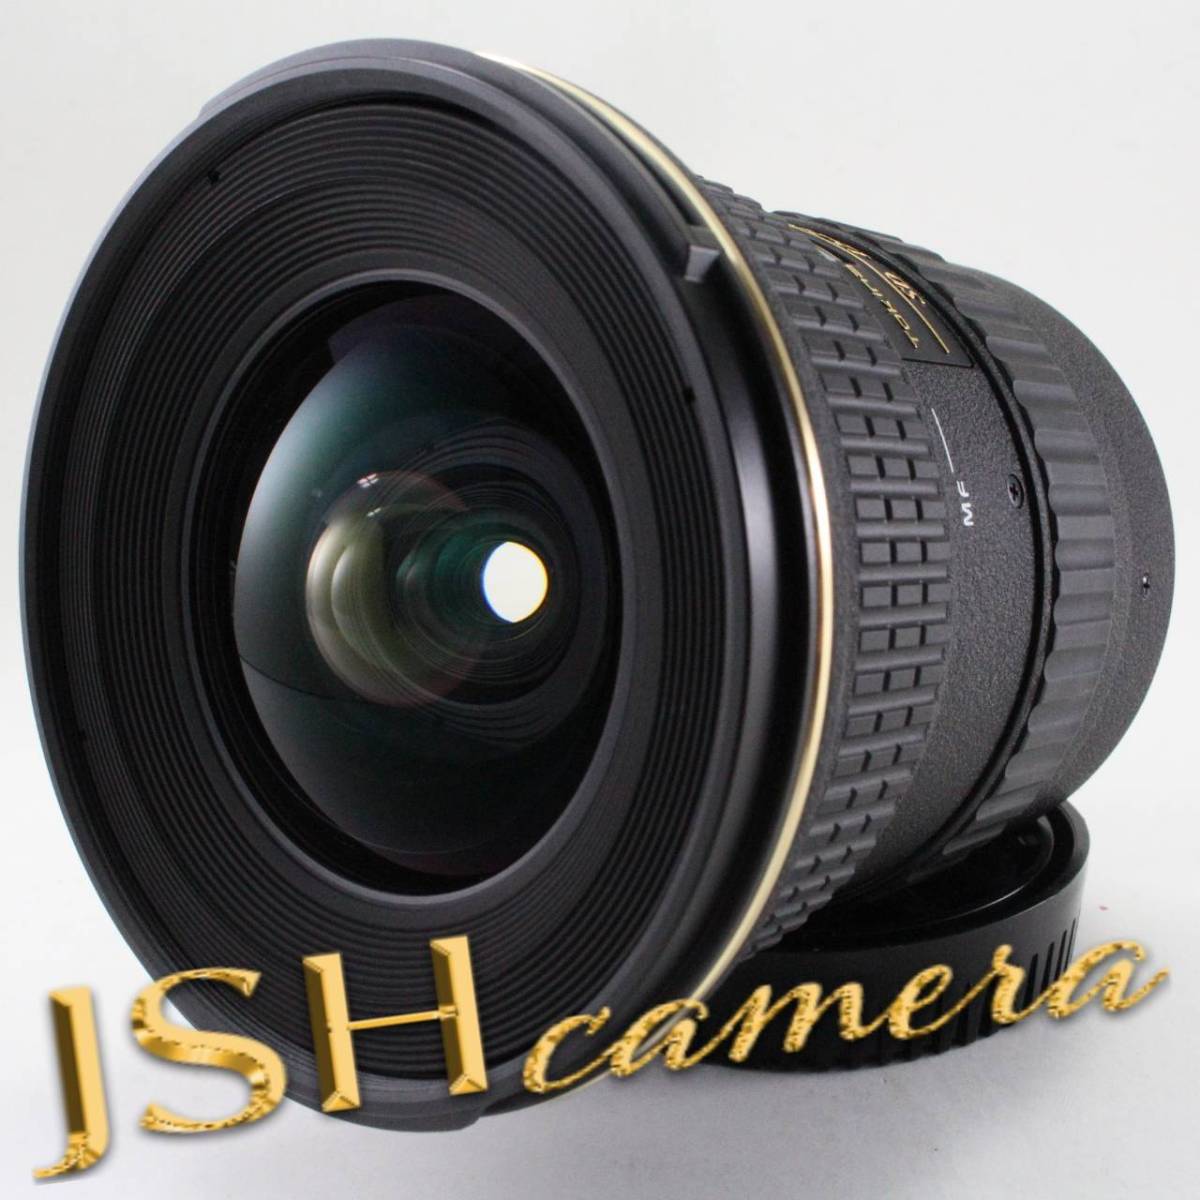 ケンコー・トキナー AT-X 124 PRO DX 12-24mm F4（IF）ASPHERICAL キヤノン用 交換レンズの商品画像